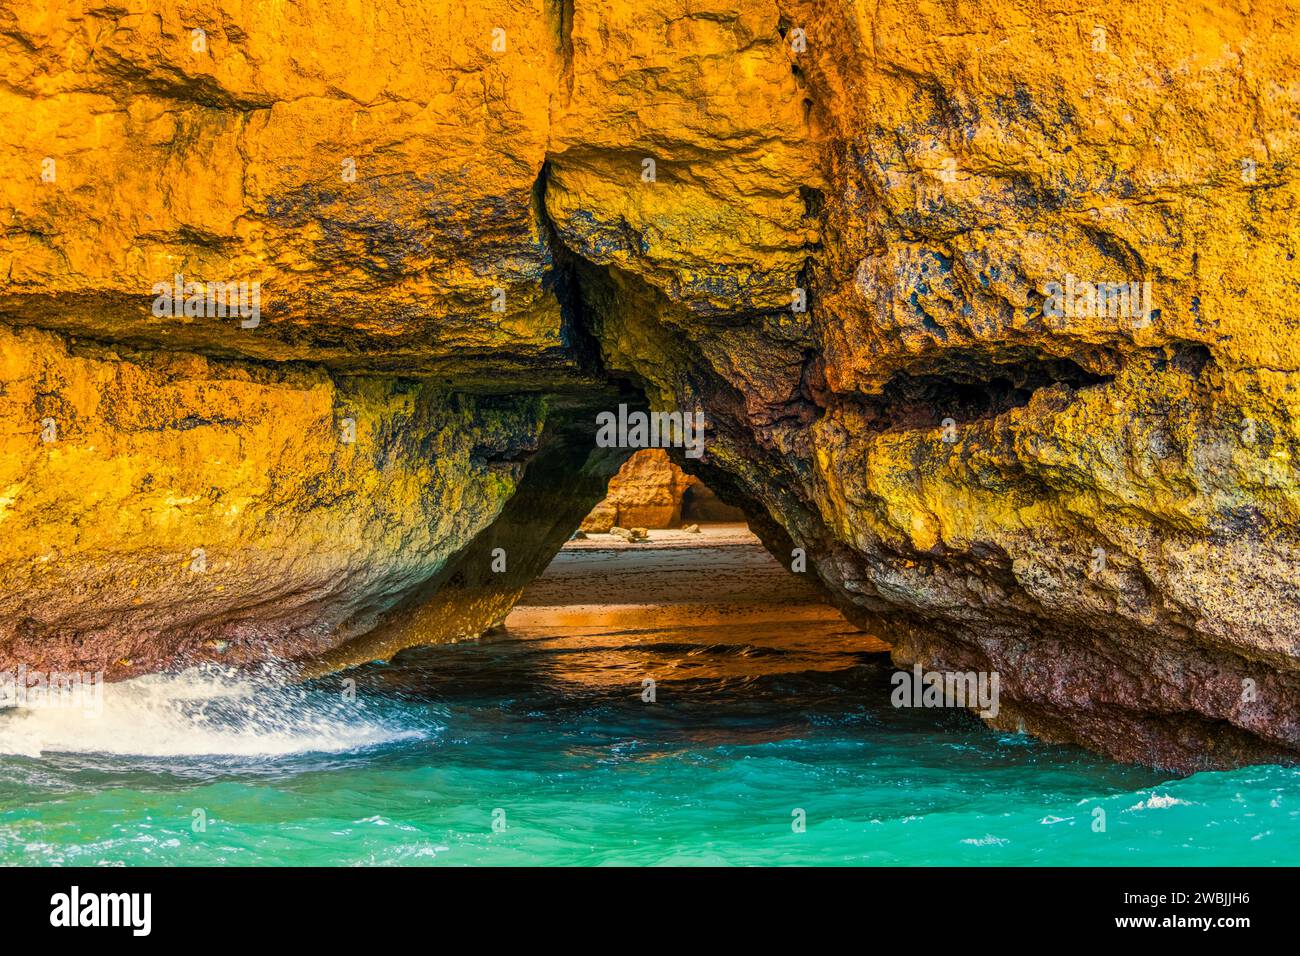 Splendida costa calcarea dell'Algarve con grotte e formazioni rocciose, Albufeira, a sud del Portogallo Foto Stock